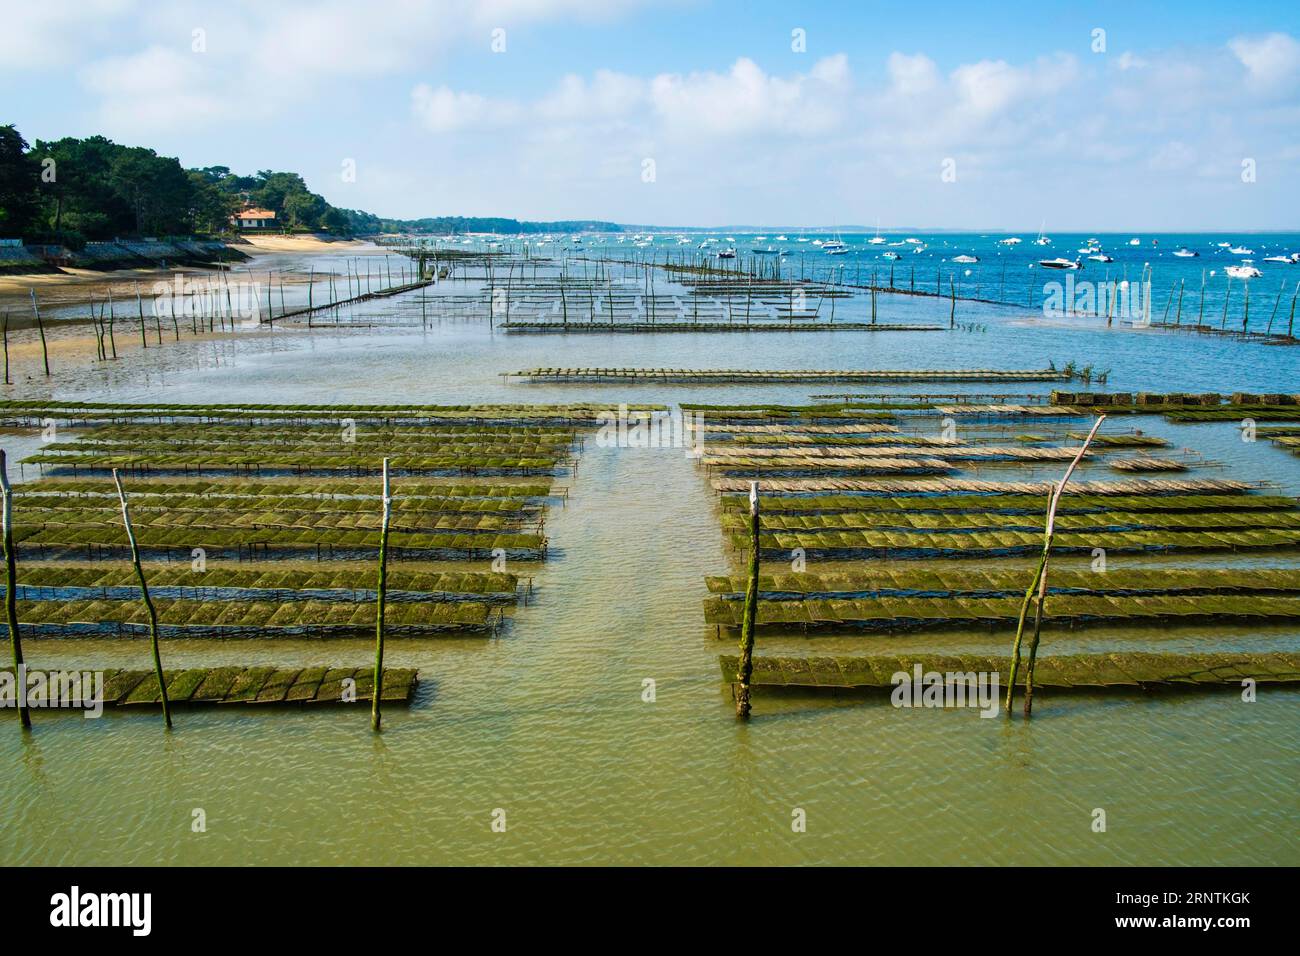 Bancs d'huîtres à marée basse dans le bassin d'Arcachon, Cap Ferret, France Banque D'Images